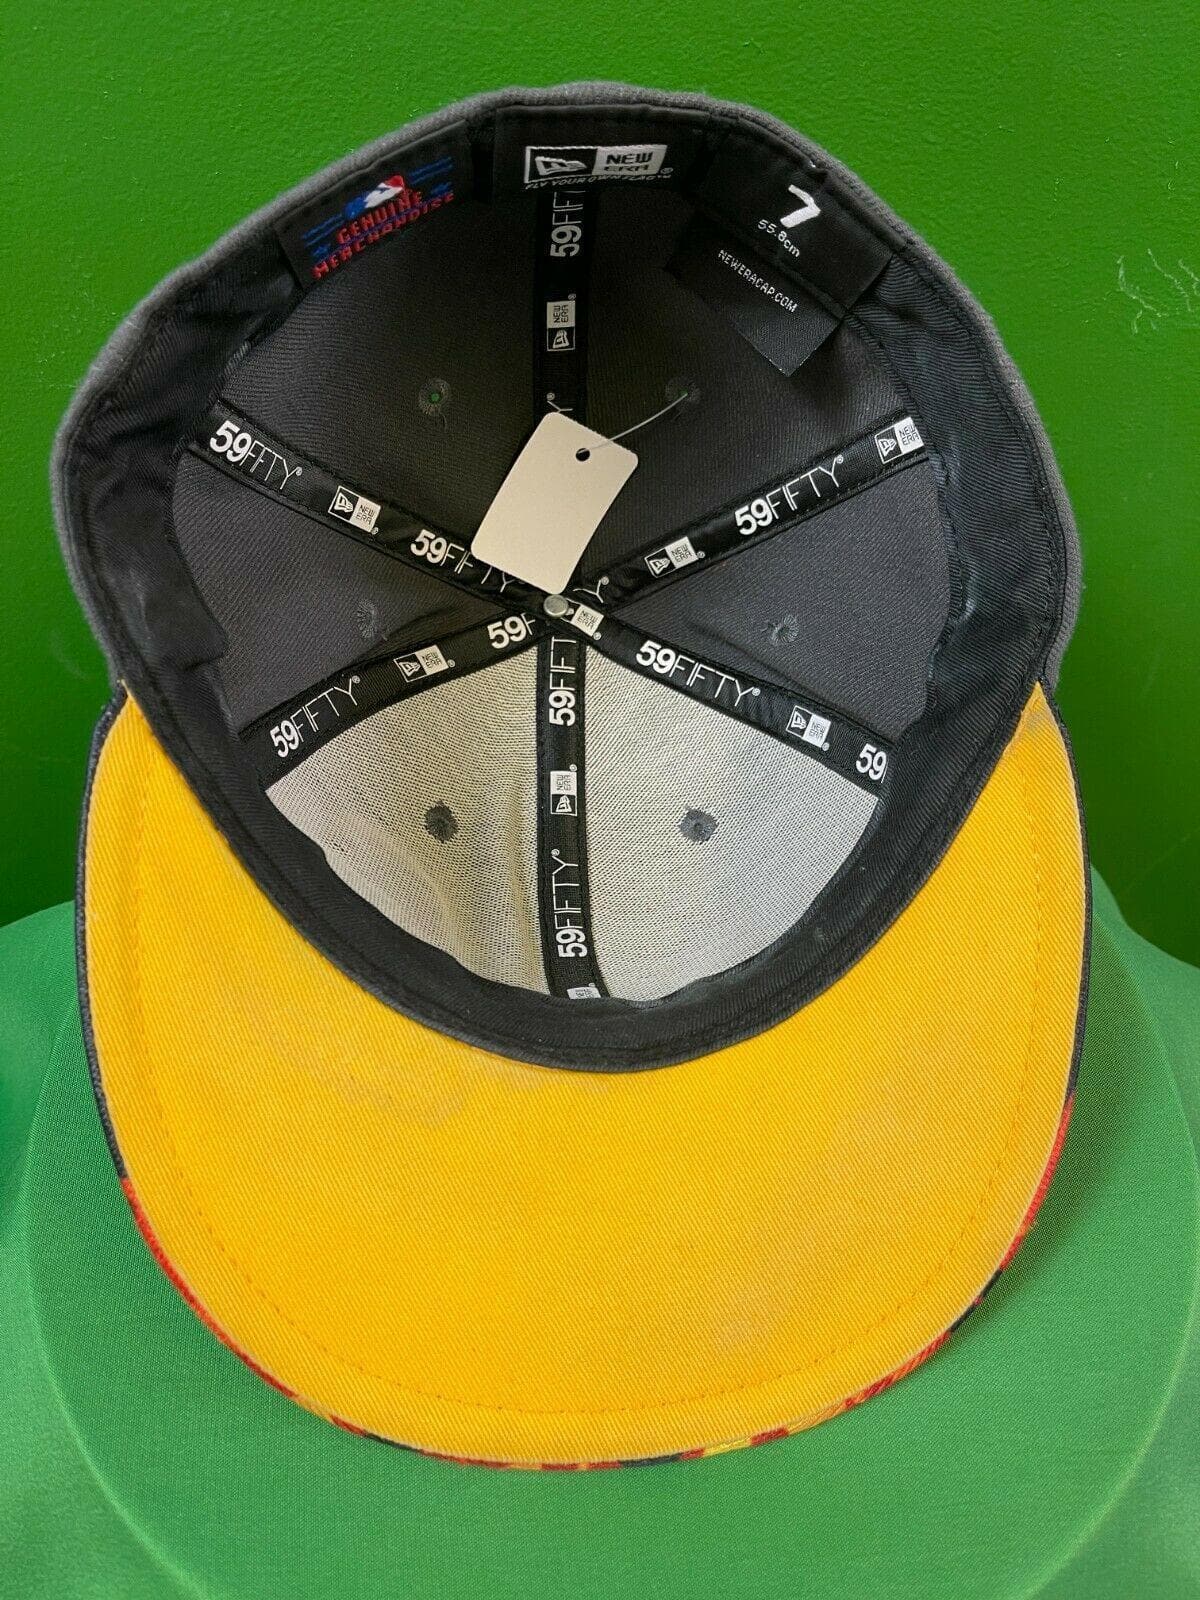 MLB Colorado Rockies New Era 59FIFTY Cap-Hat Size 7 Flames!